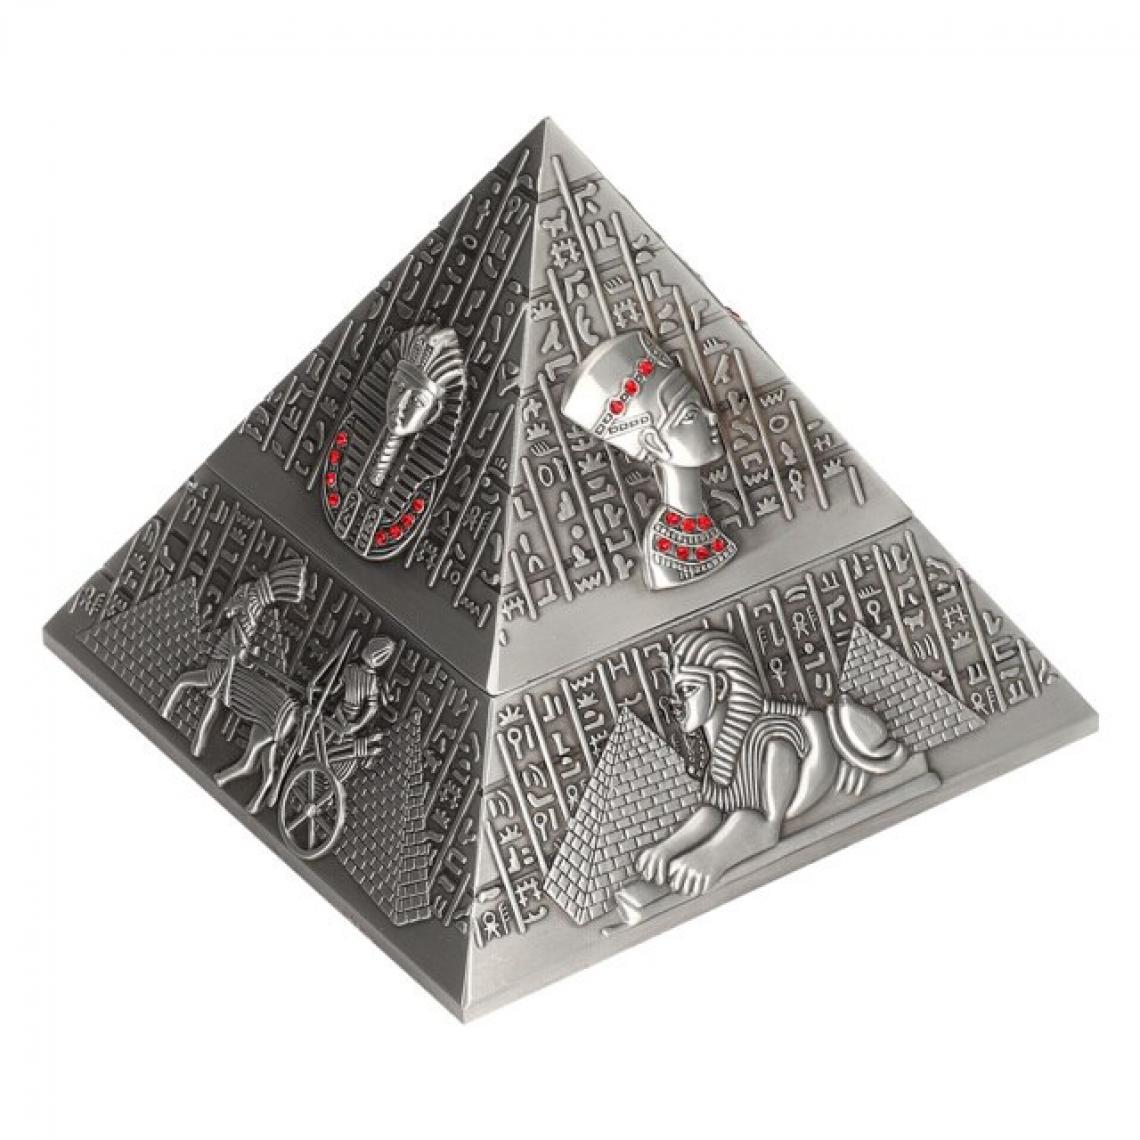 Universal - Cendriers innovants Cendriers en forme de pyramide des pharaons égyptiens Vintage Home Table Decoration Cadeaux Home Artisanat Decoration |(Argent) - Cendriers